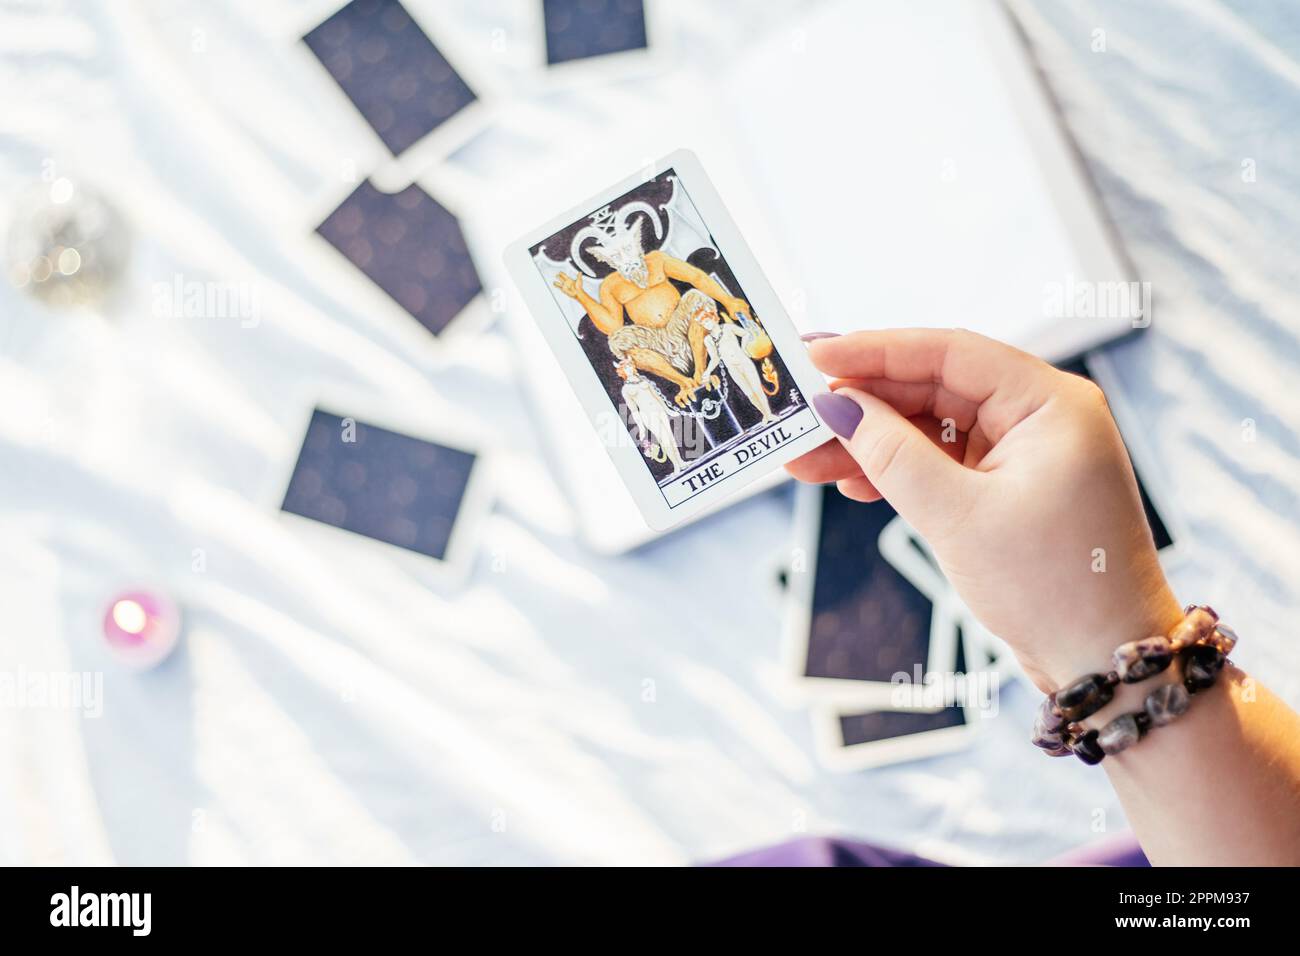 Eine weibliche Hand mit lila Nägeln hält die Tarotkarte mit dem Namen „Devil“ auf einer weißen Oberfläche mit offenem Notizbuch und Kerze. Draufsicht Stockfoto